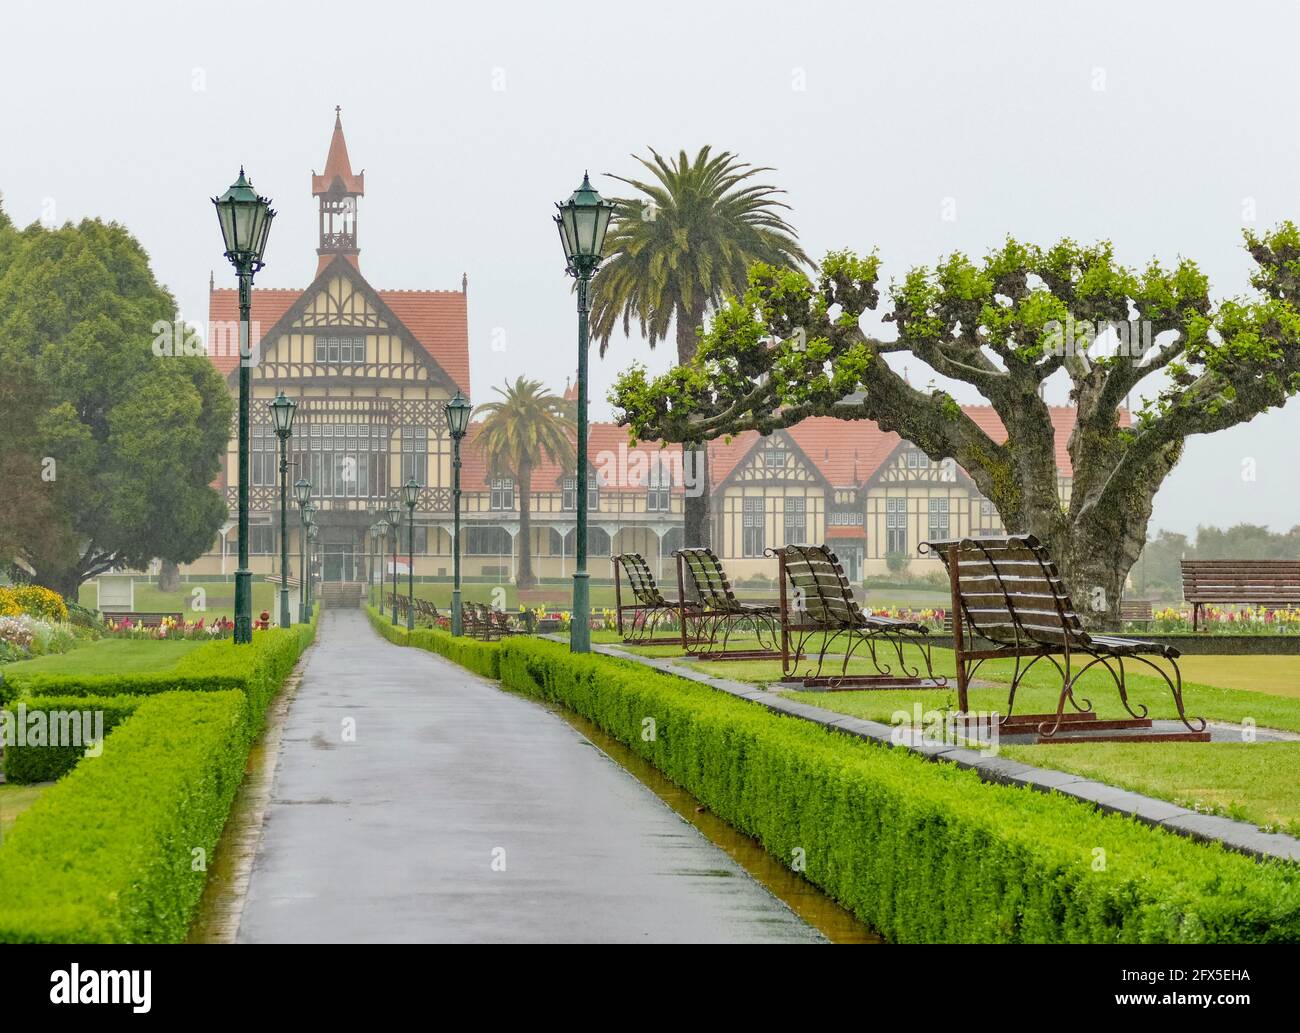 Rainy impression of the Rotorua Museum at Rotorua in New Zealand Stock Photo